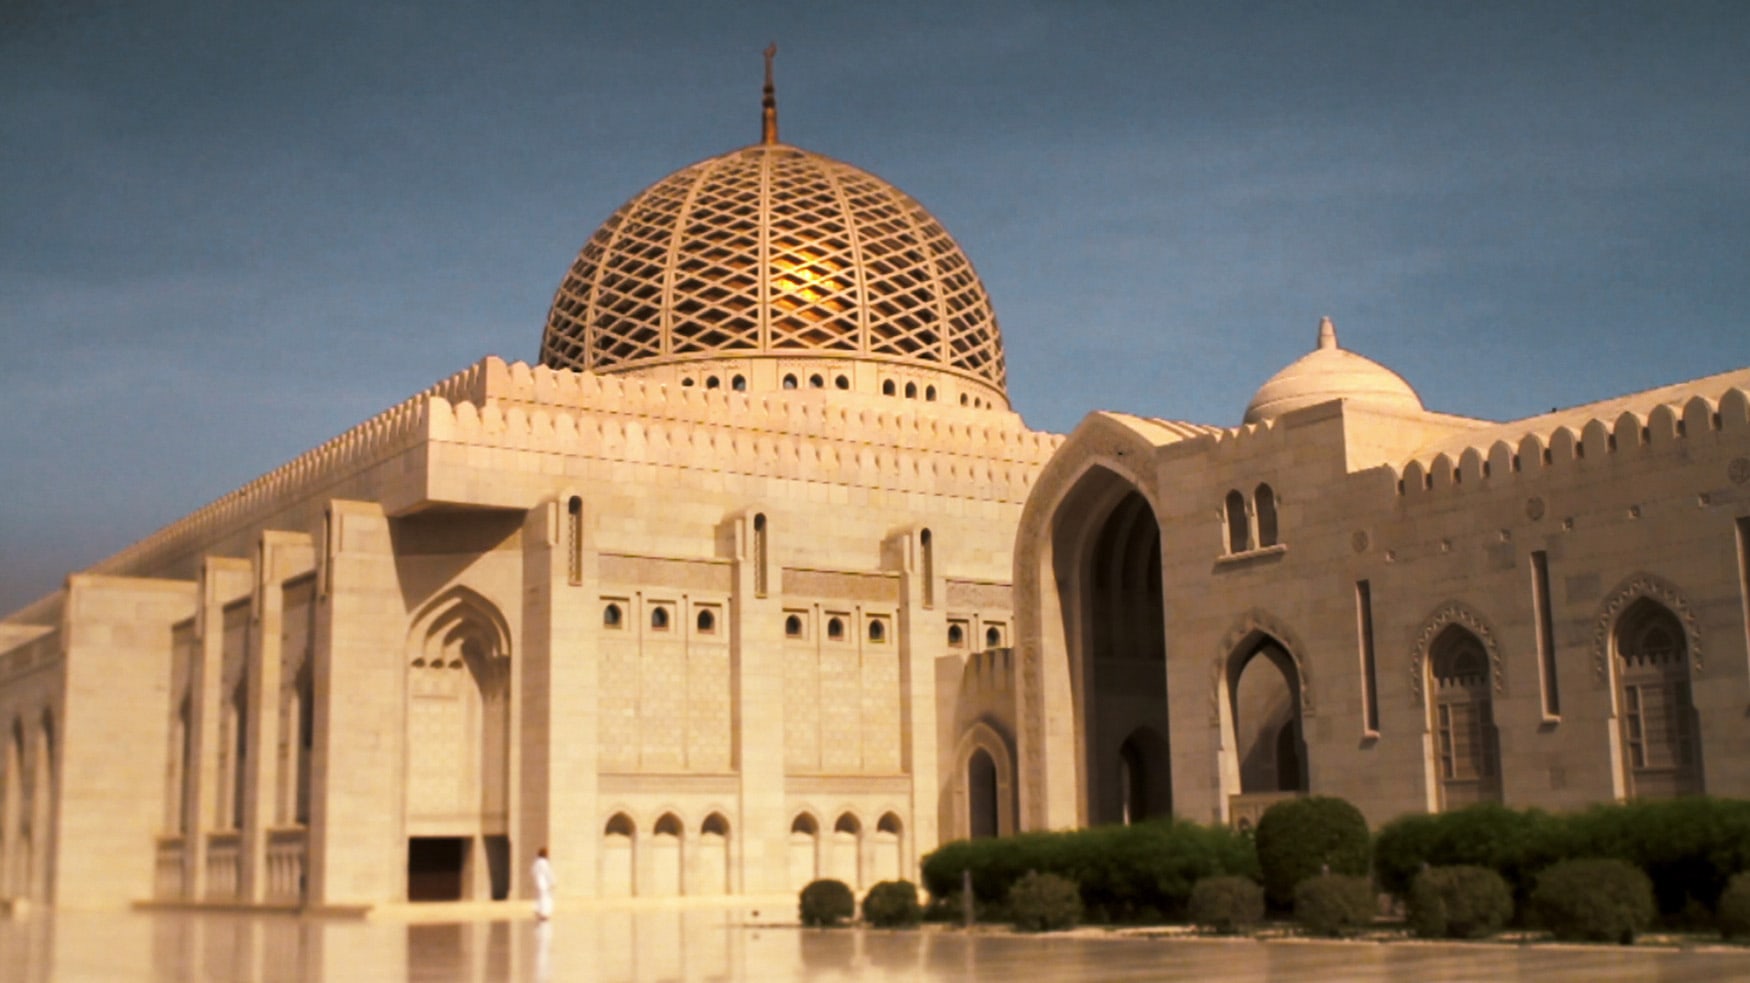 Sultan Qaboos Grand Mosque in Oman